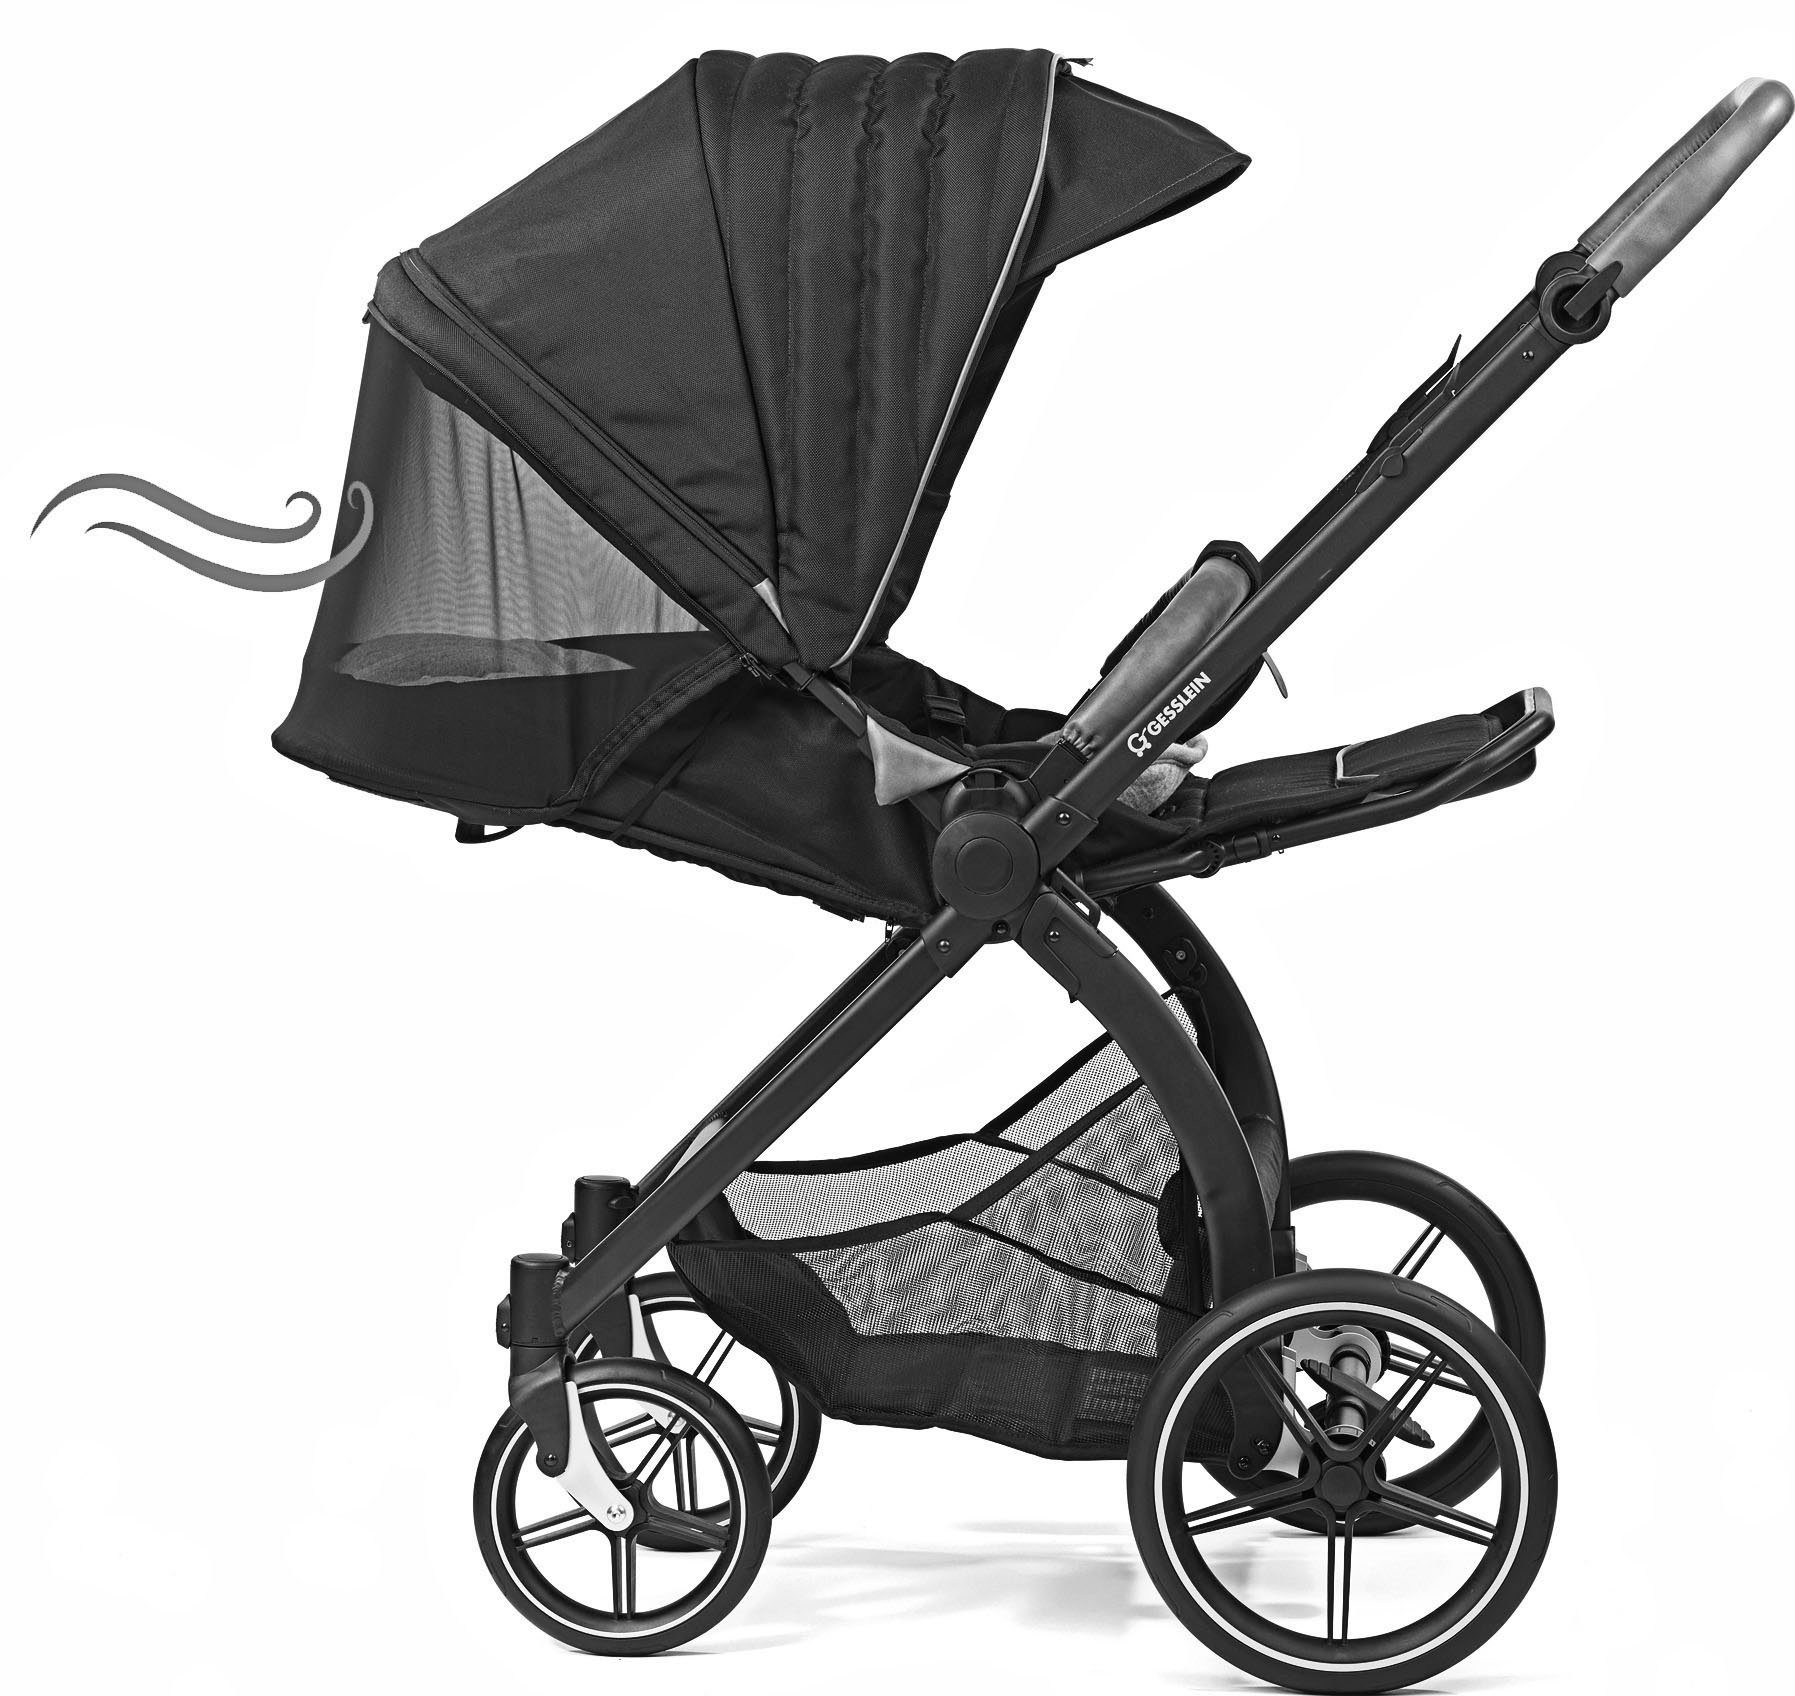 Gesslein Kombi-Kinderwagen FX4 Soft+ mit mit Babywanne mintgrün meliert, C3 schwarz, Aufsatz und Babyschalenadapter Swing